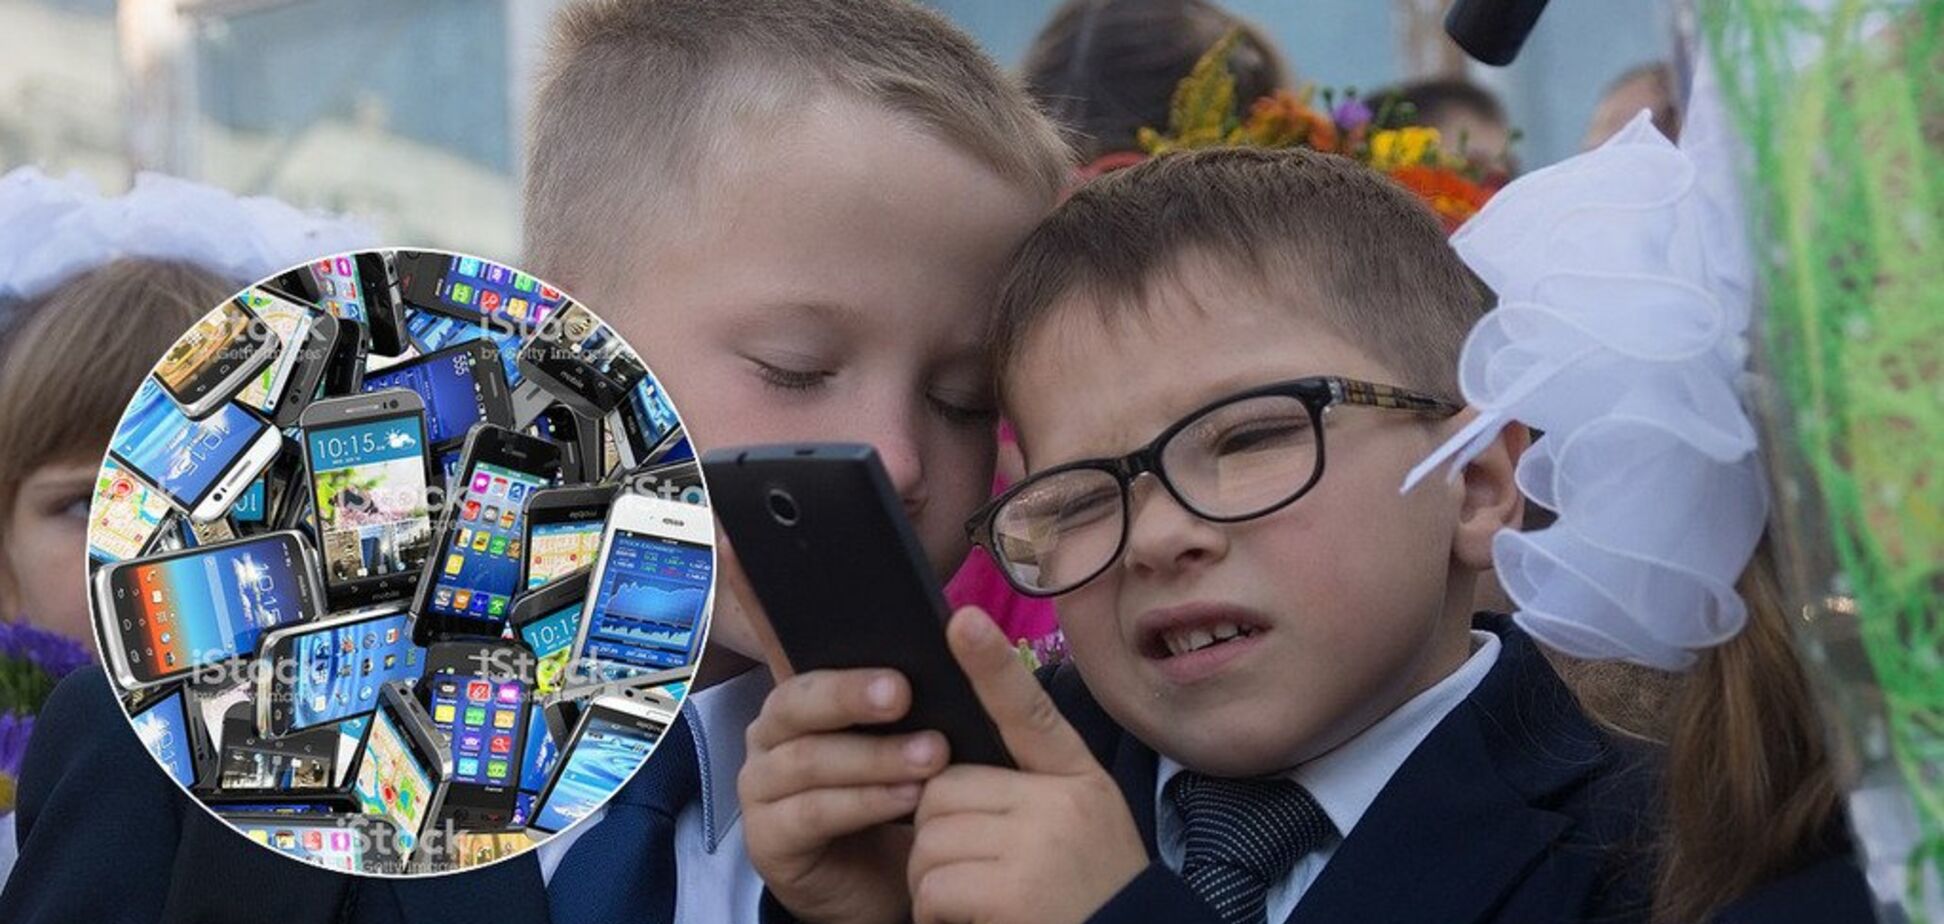 У школи заборонять ходити з телефонами? В Україні пропонують нові правила